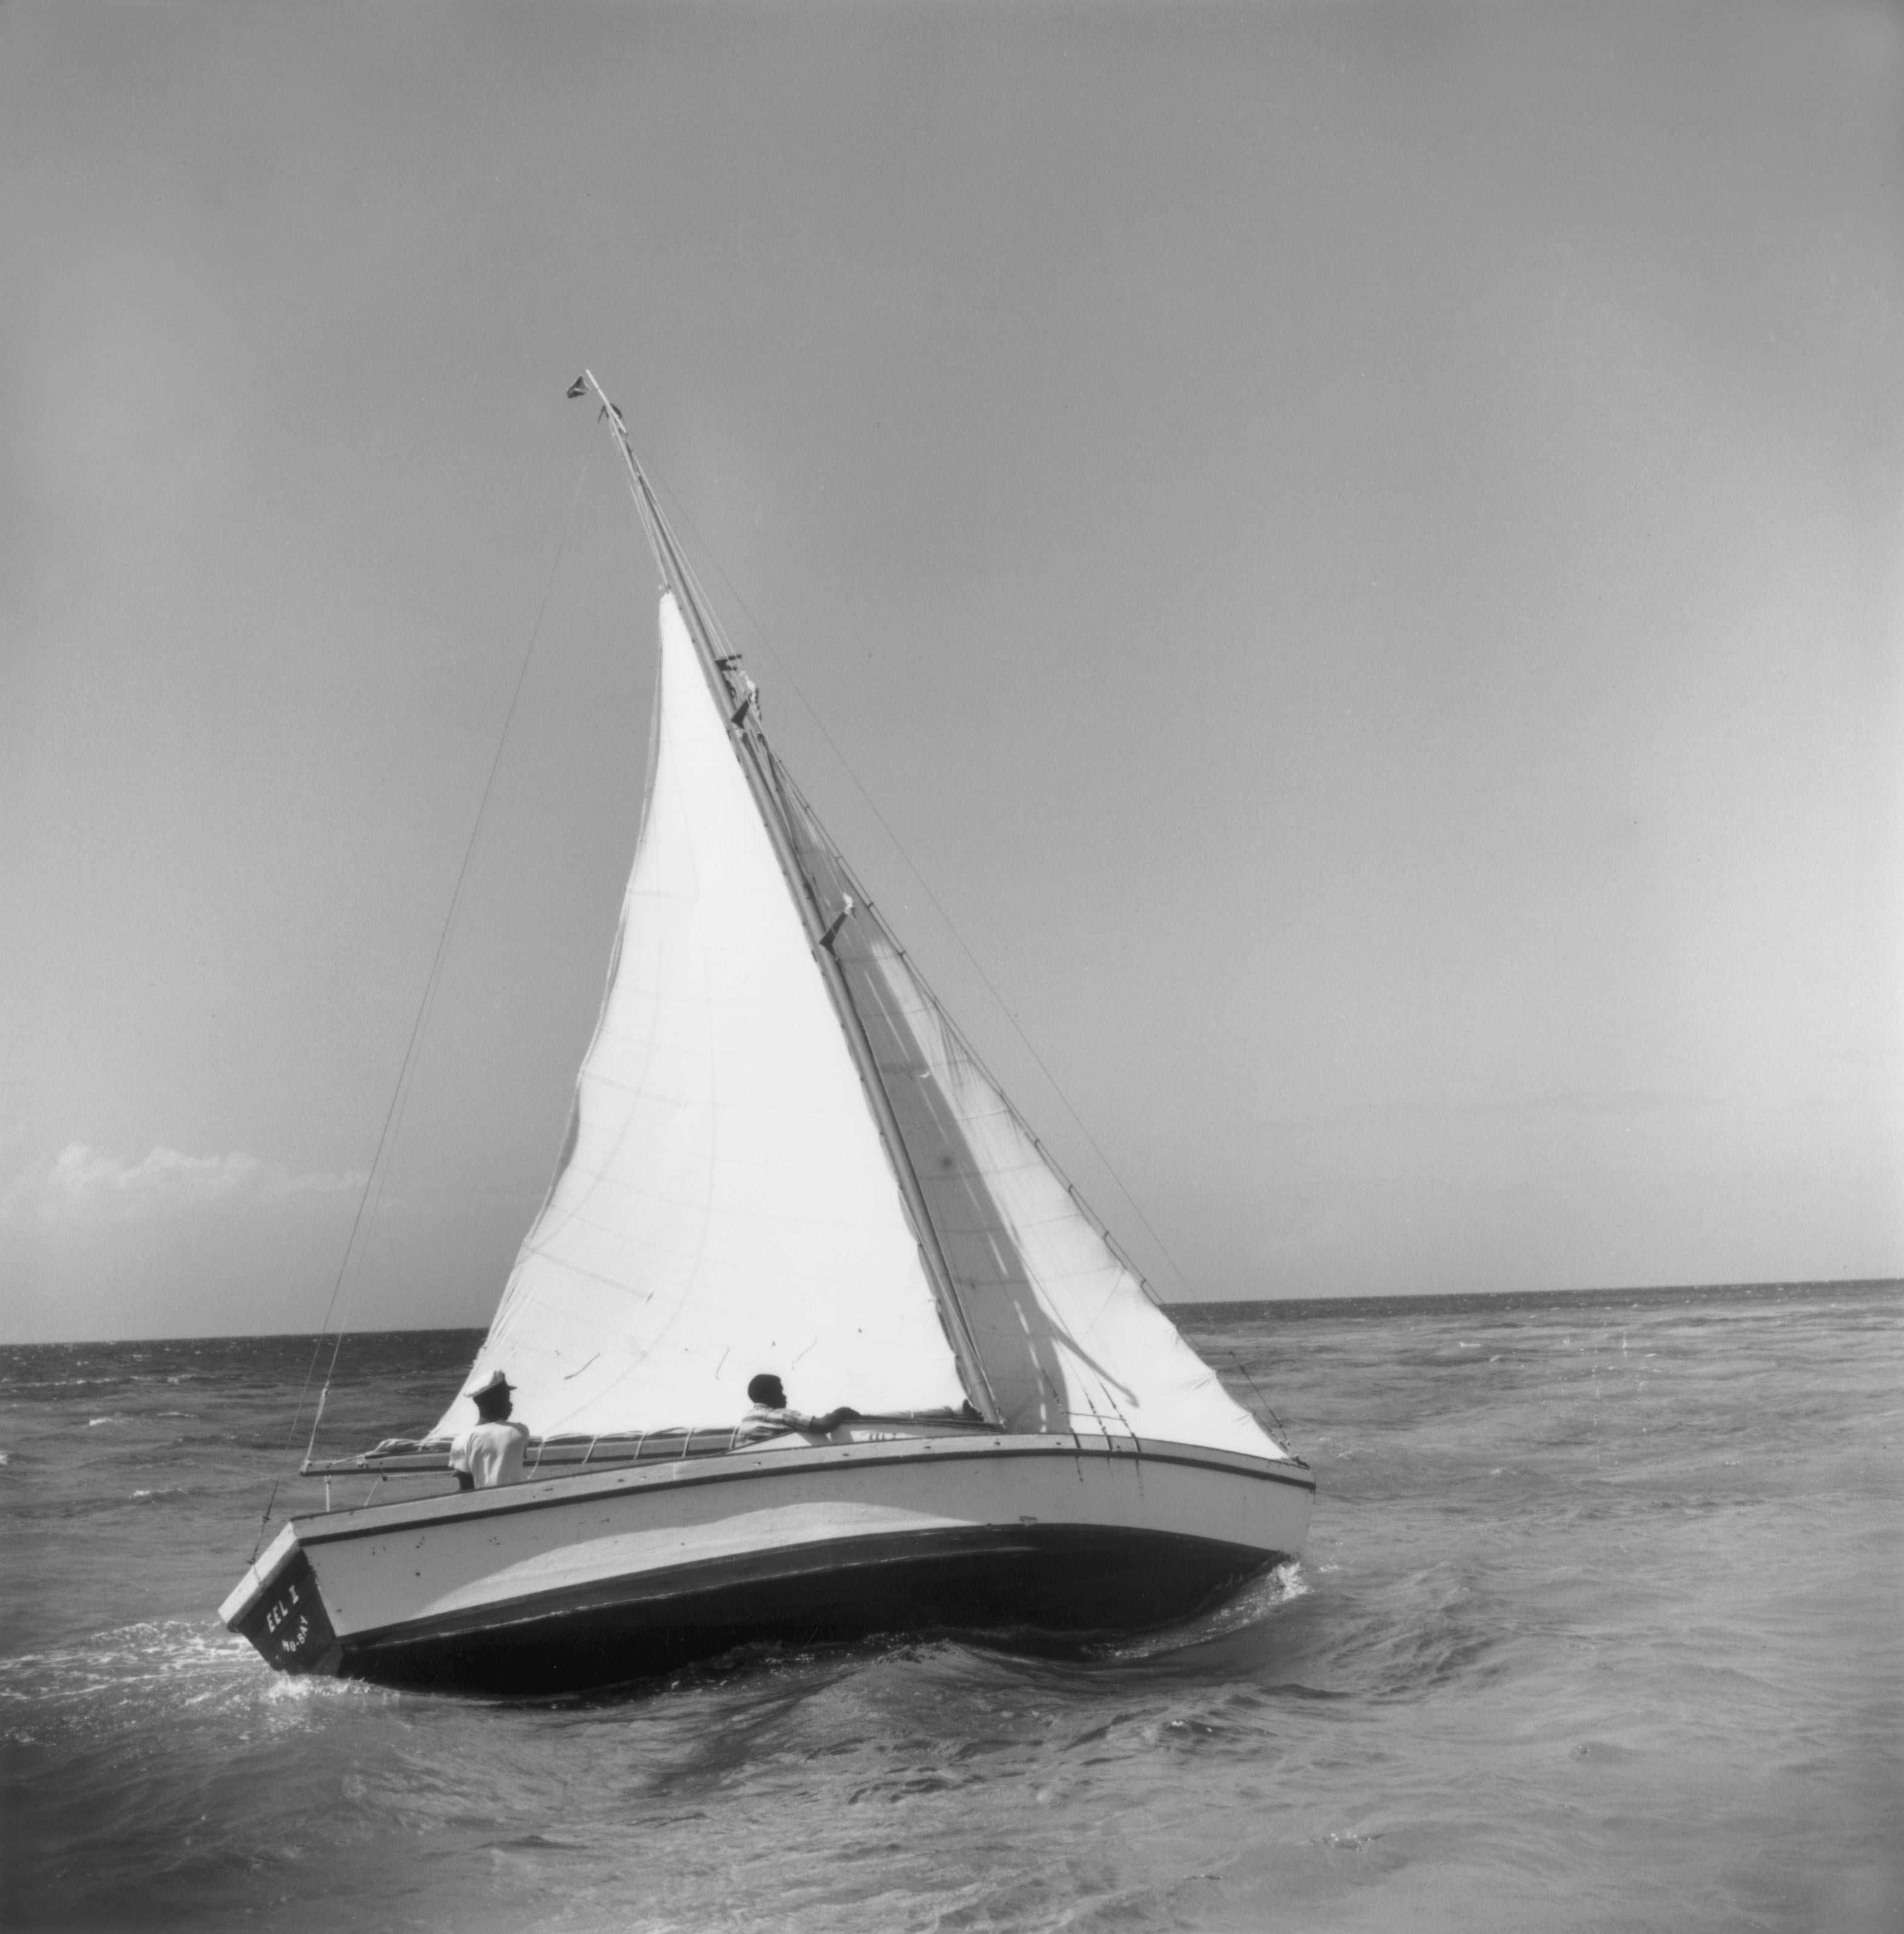 Jamaika Seesegeln, 1953
Faserdruck
Nachlassauflage von 150 Stück
Unterschrift gestempelt und handnummeriert mit Echtheitszertifikat

1953: Zwei Männer segeln mit ihrer Jacht "Eel II" in Jamaika.

Slim Aarons (1916-2006) arbeitete hauptsächlich für